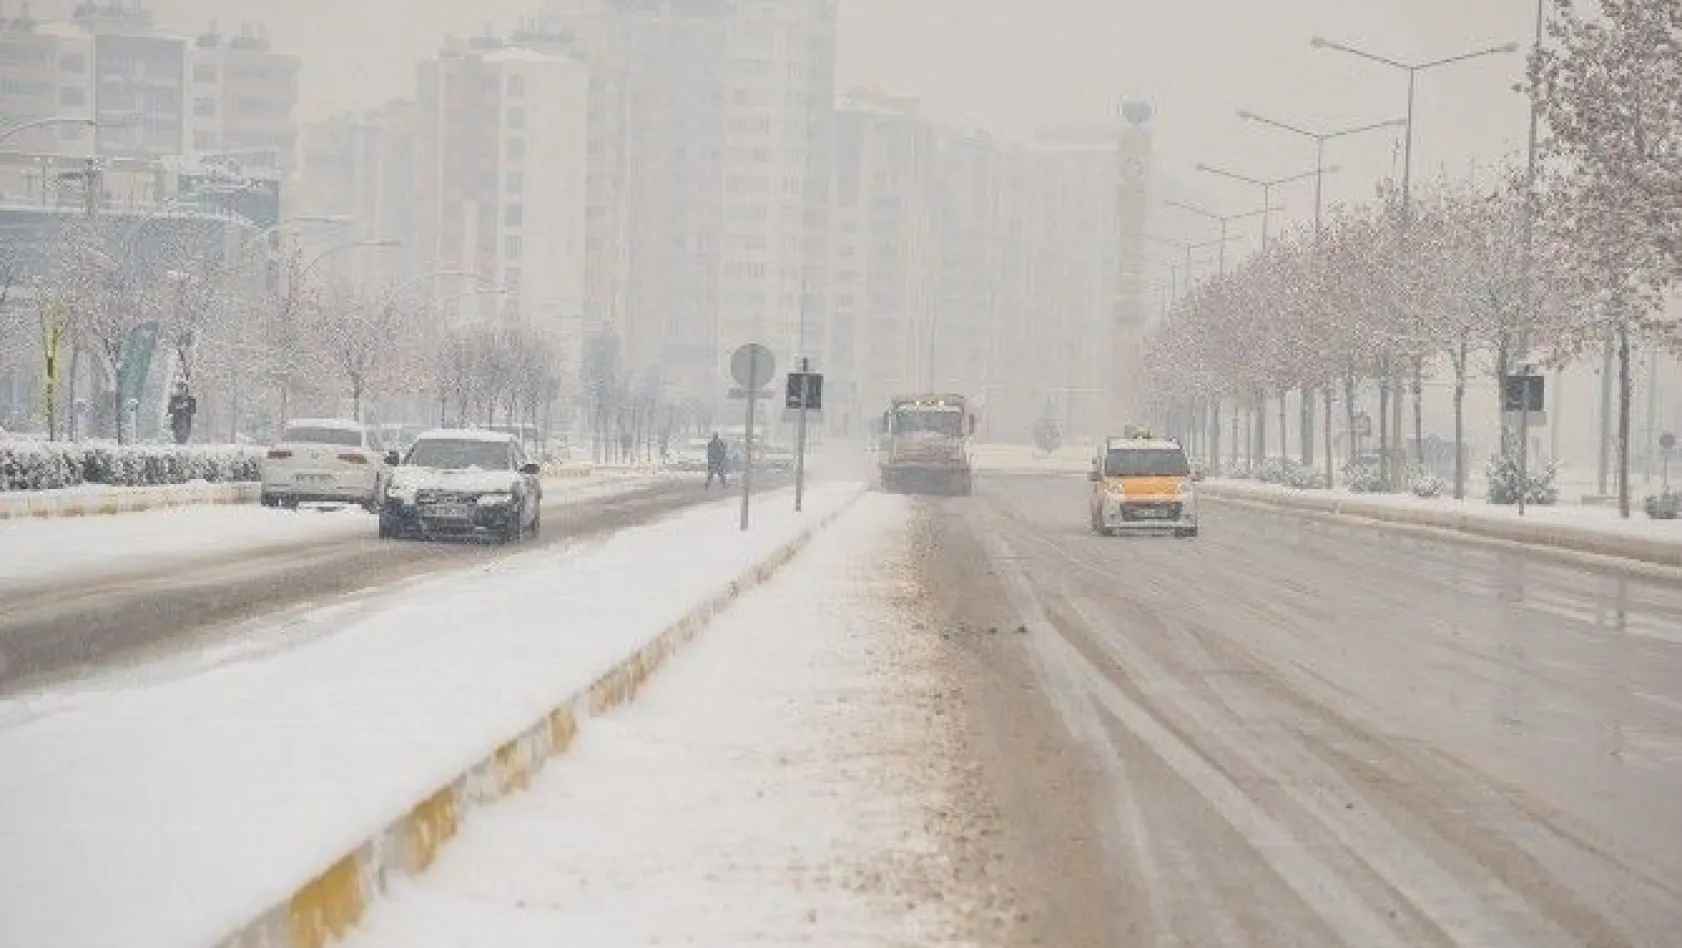 Büyükşehir Belediyesi'nin karla mücadelesi sürüyor
